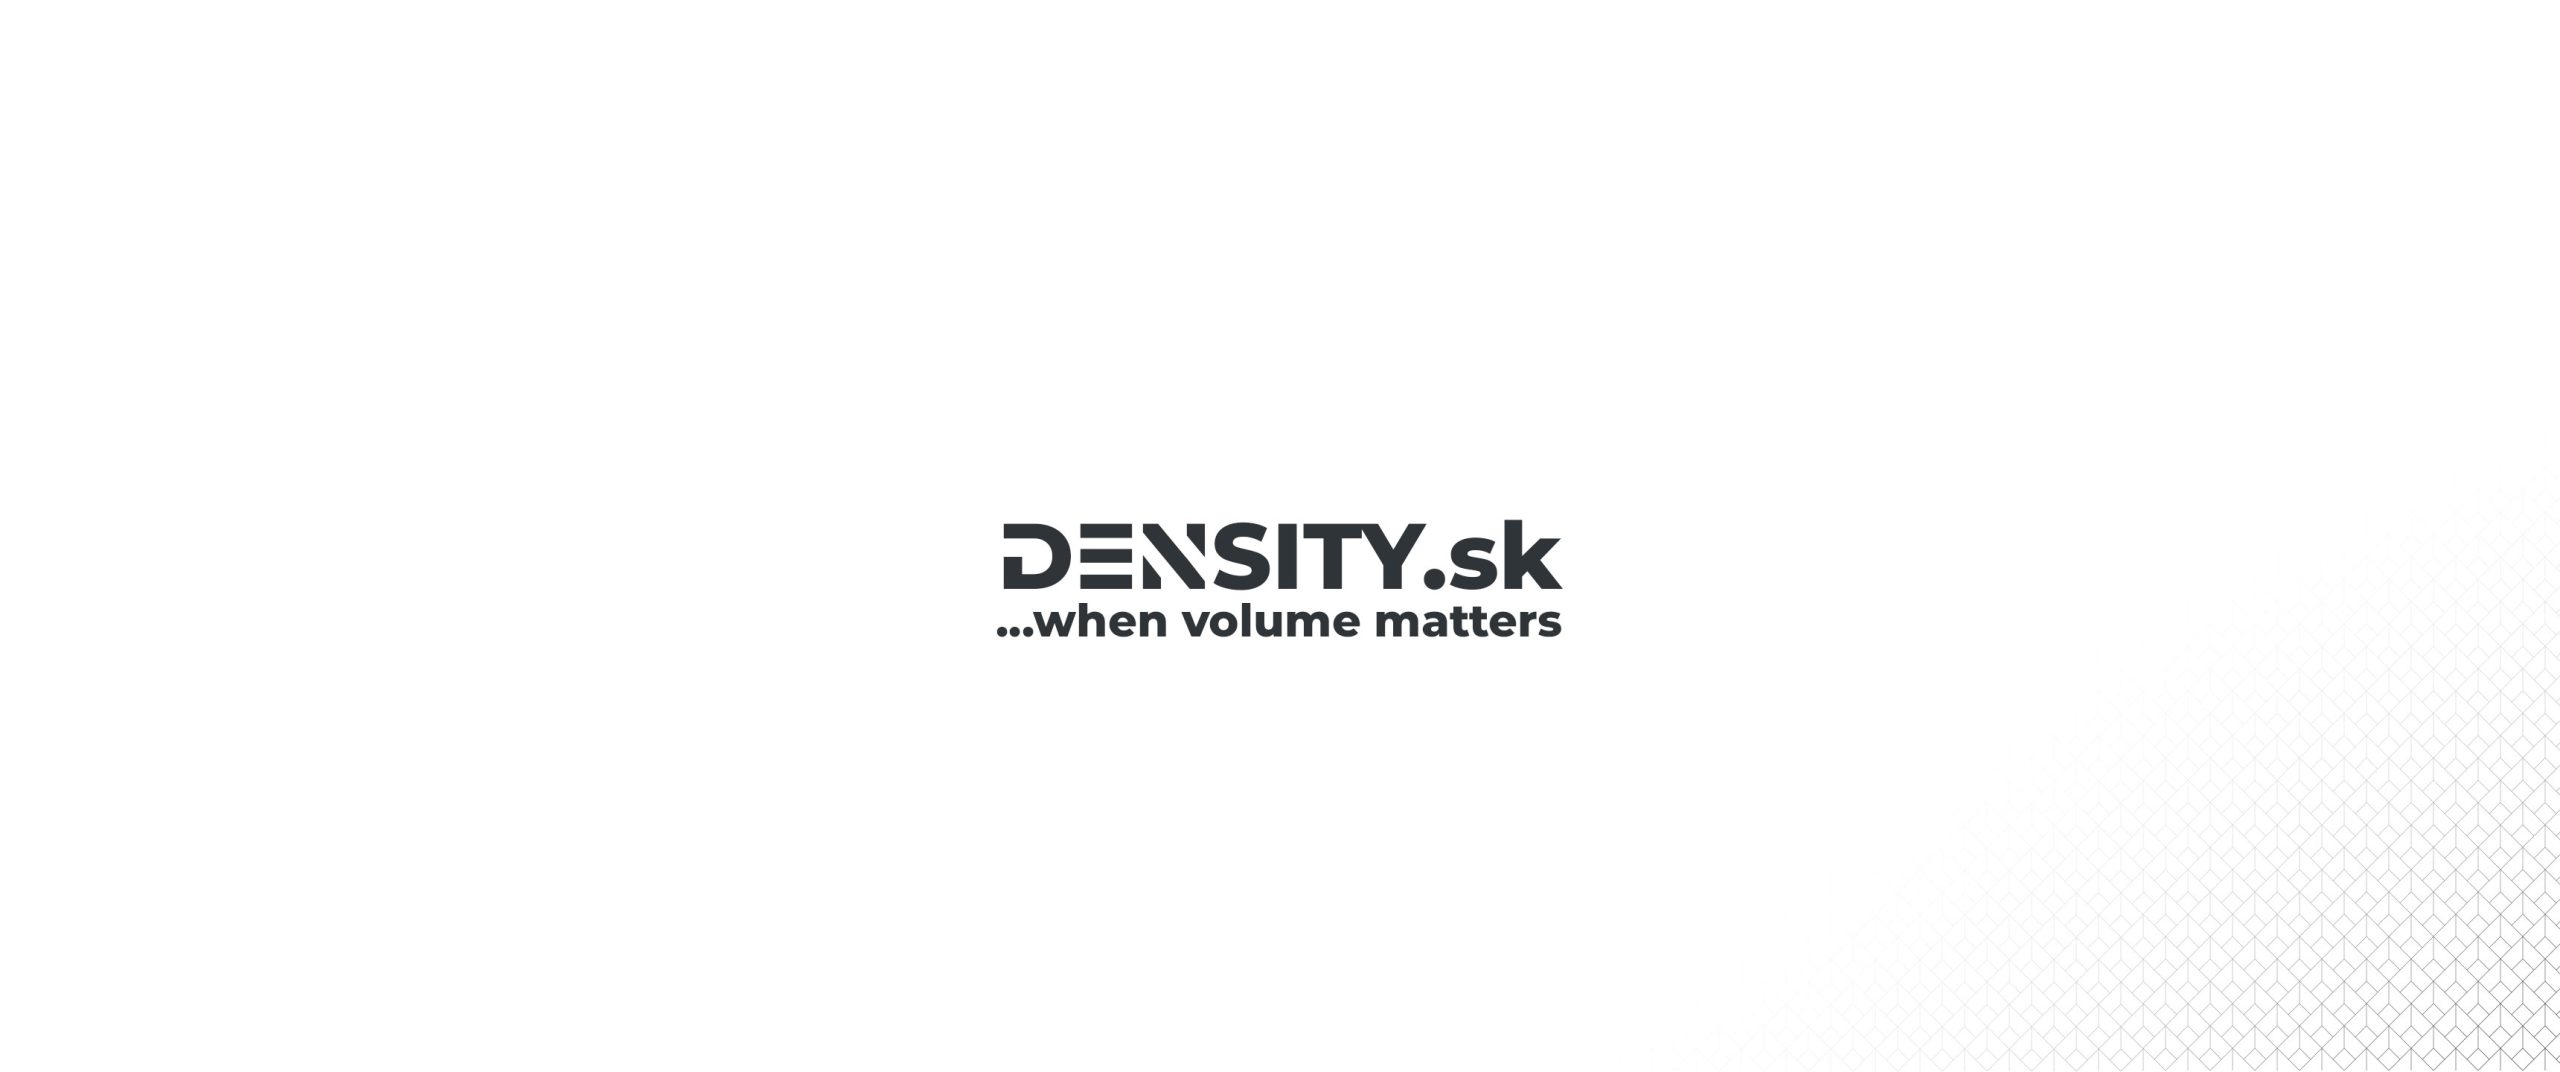 www.density.sk